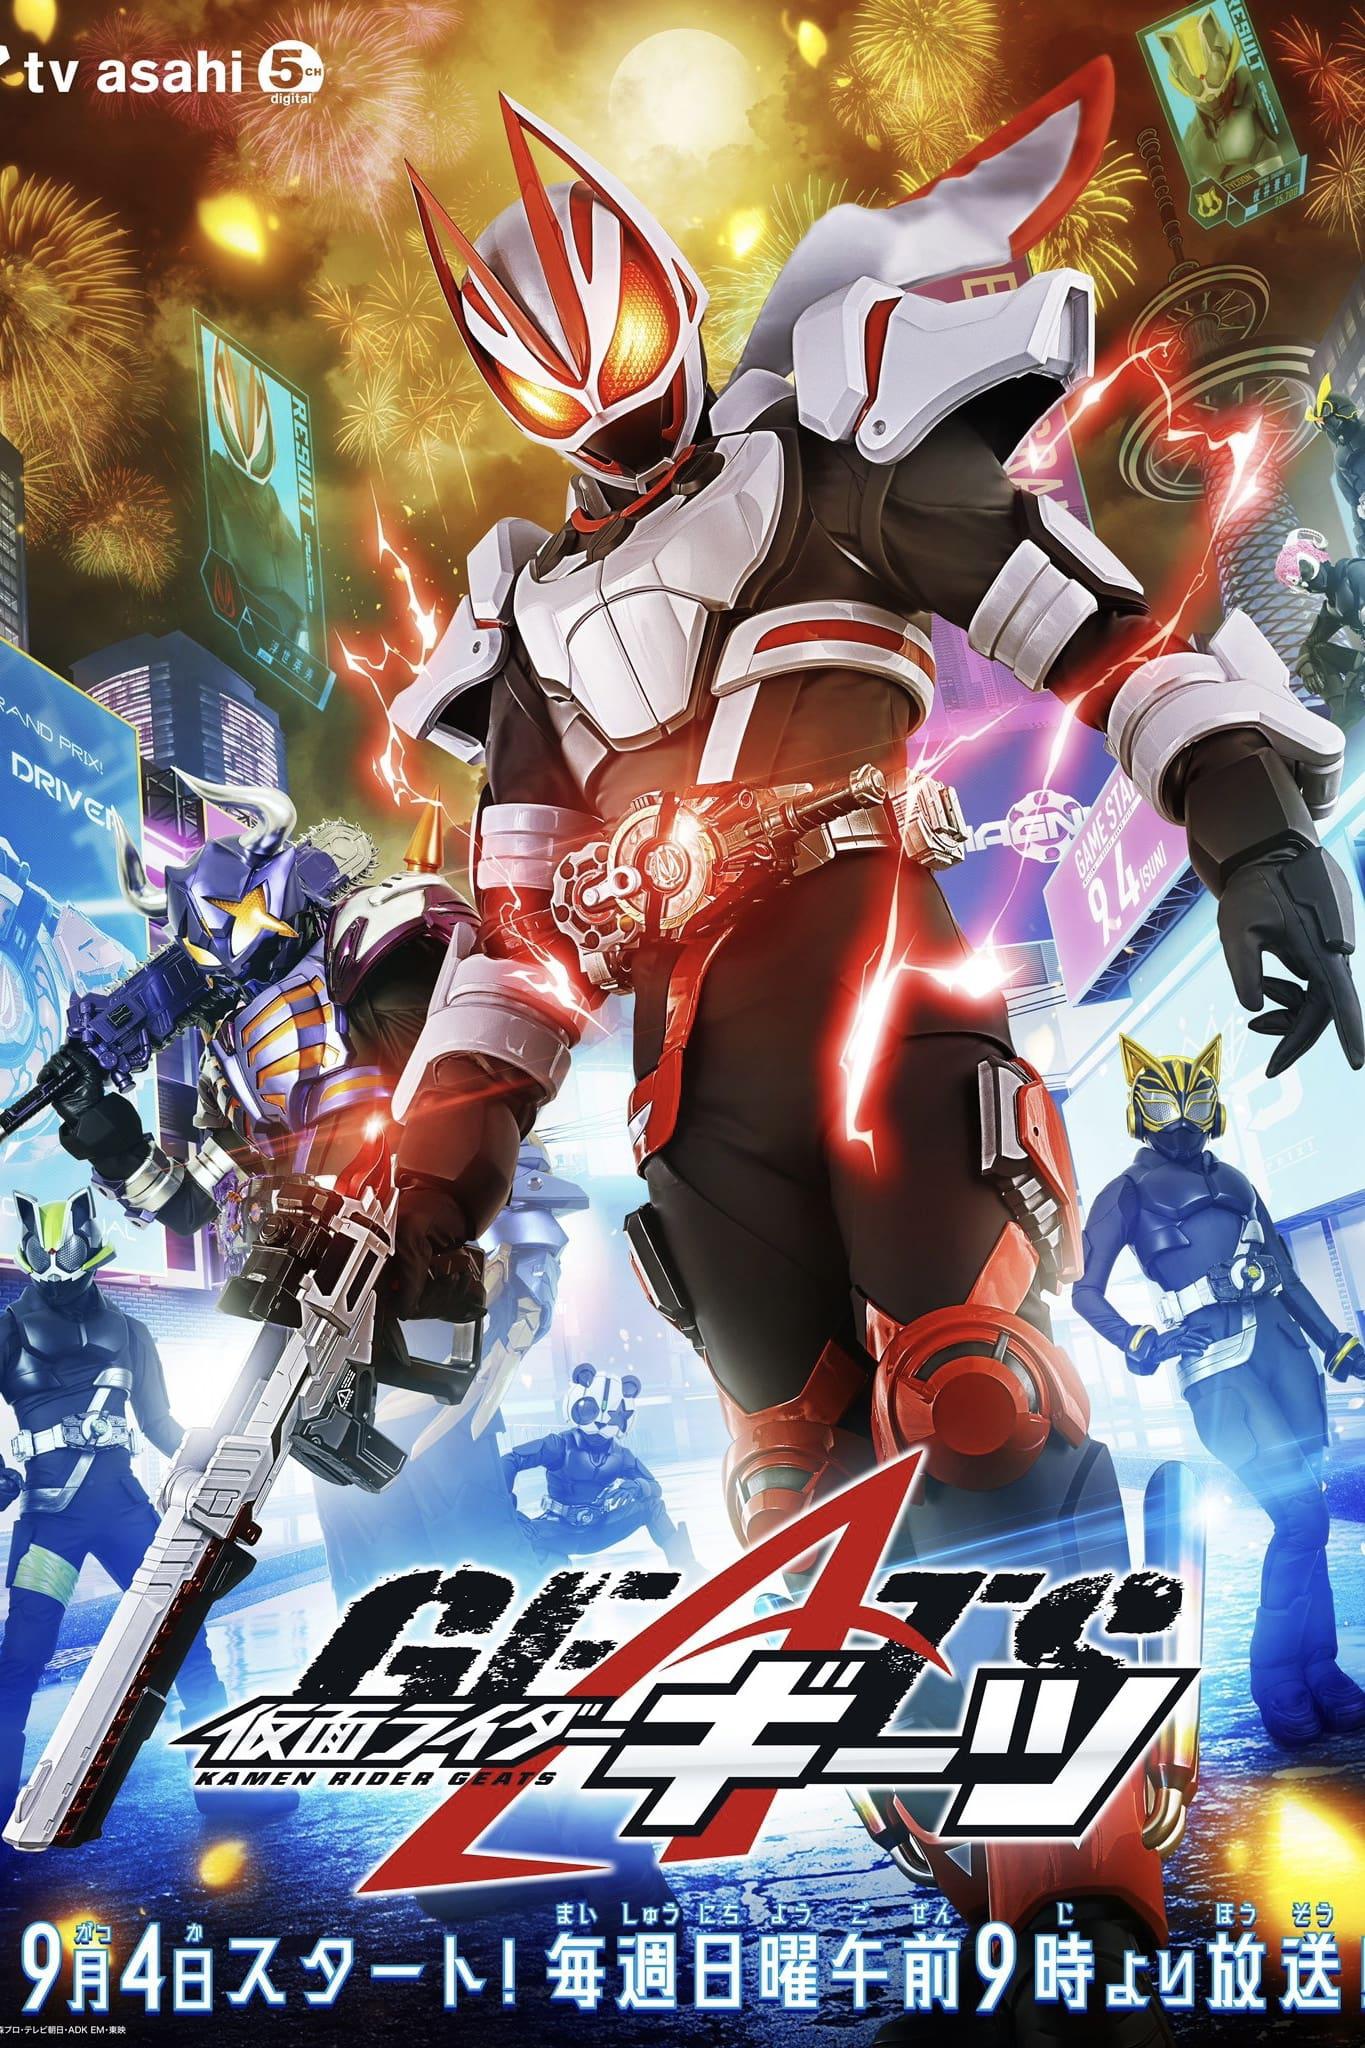 TV ratings for Kamen Rider Geats (仮面ライダーギーツ) in India. TV Asahi TV series